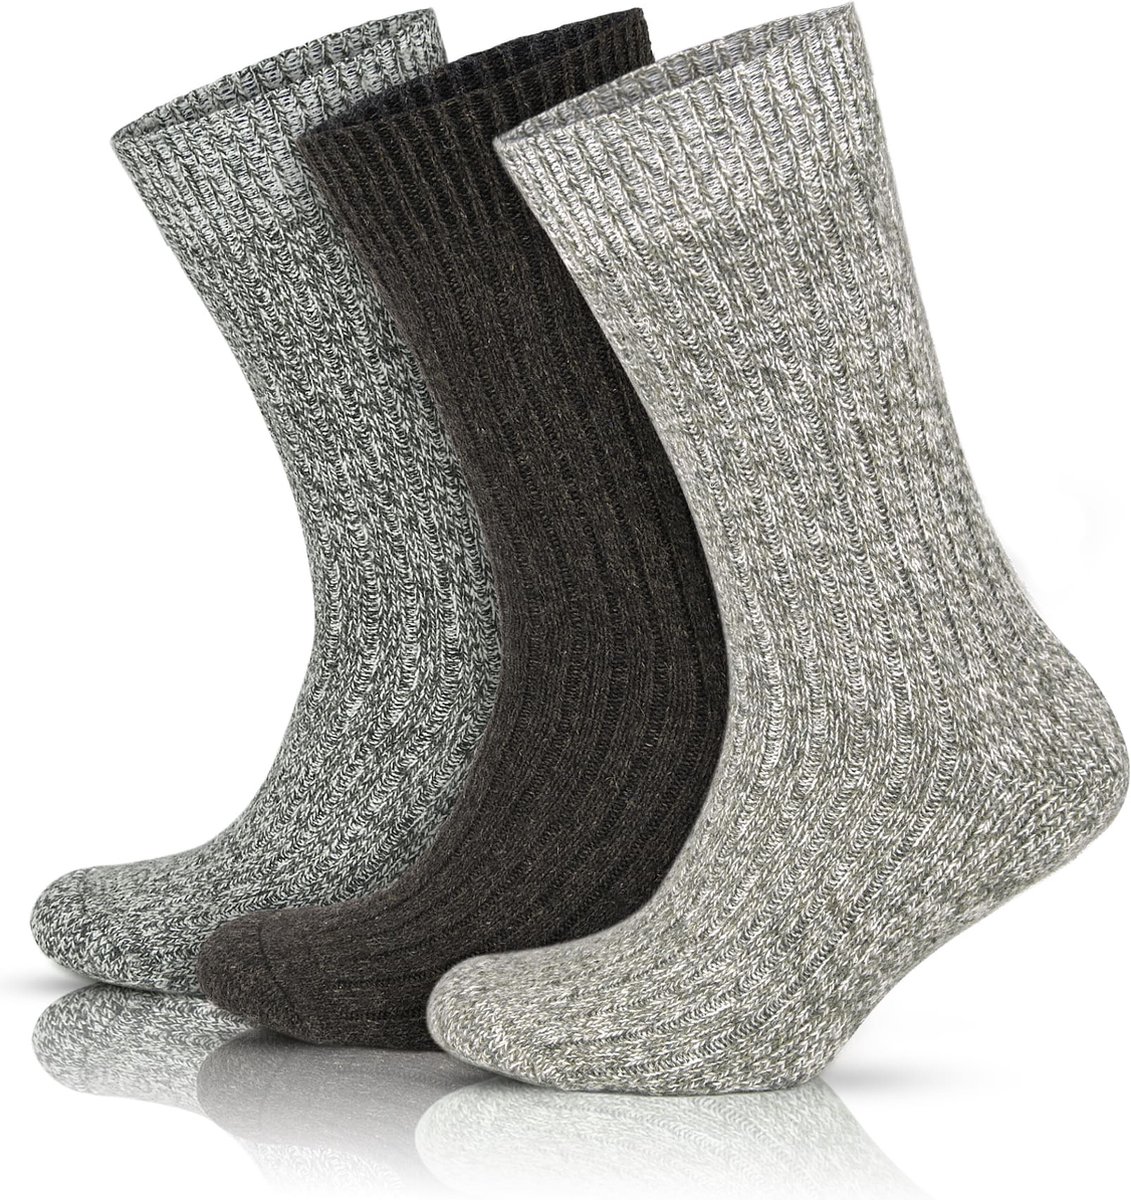 GoWith - wollen sokken - noorse sokken - 3 paar - wintersokken - thermosokken - huissokken - sokken heren - dames sokken - maat 39-42